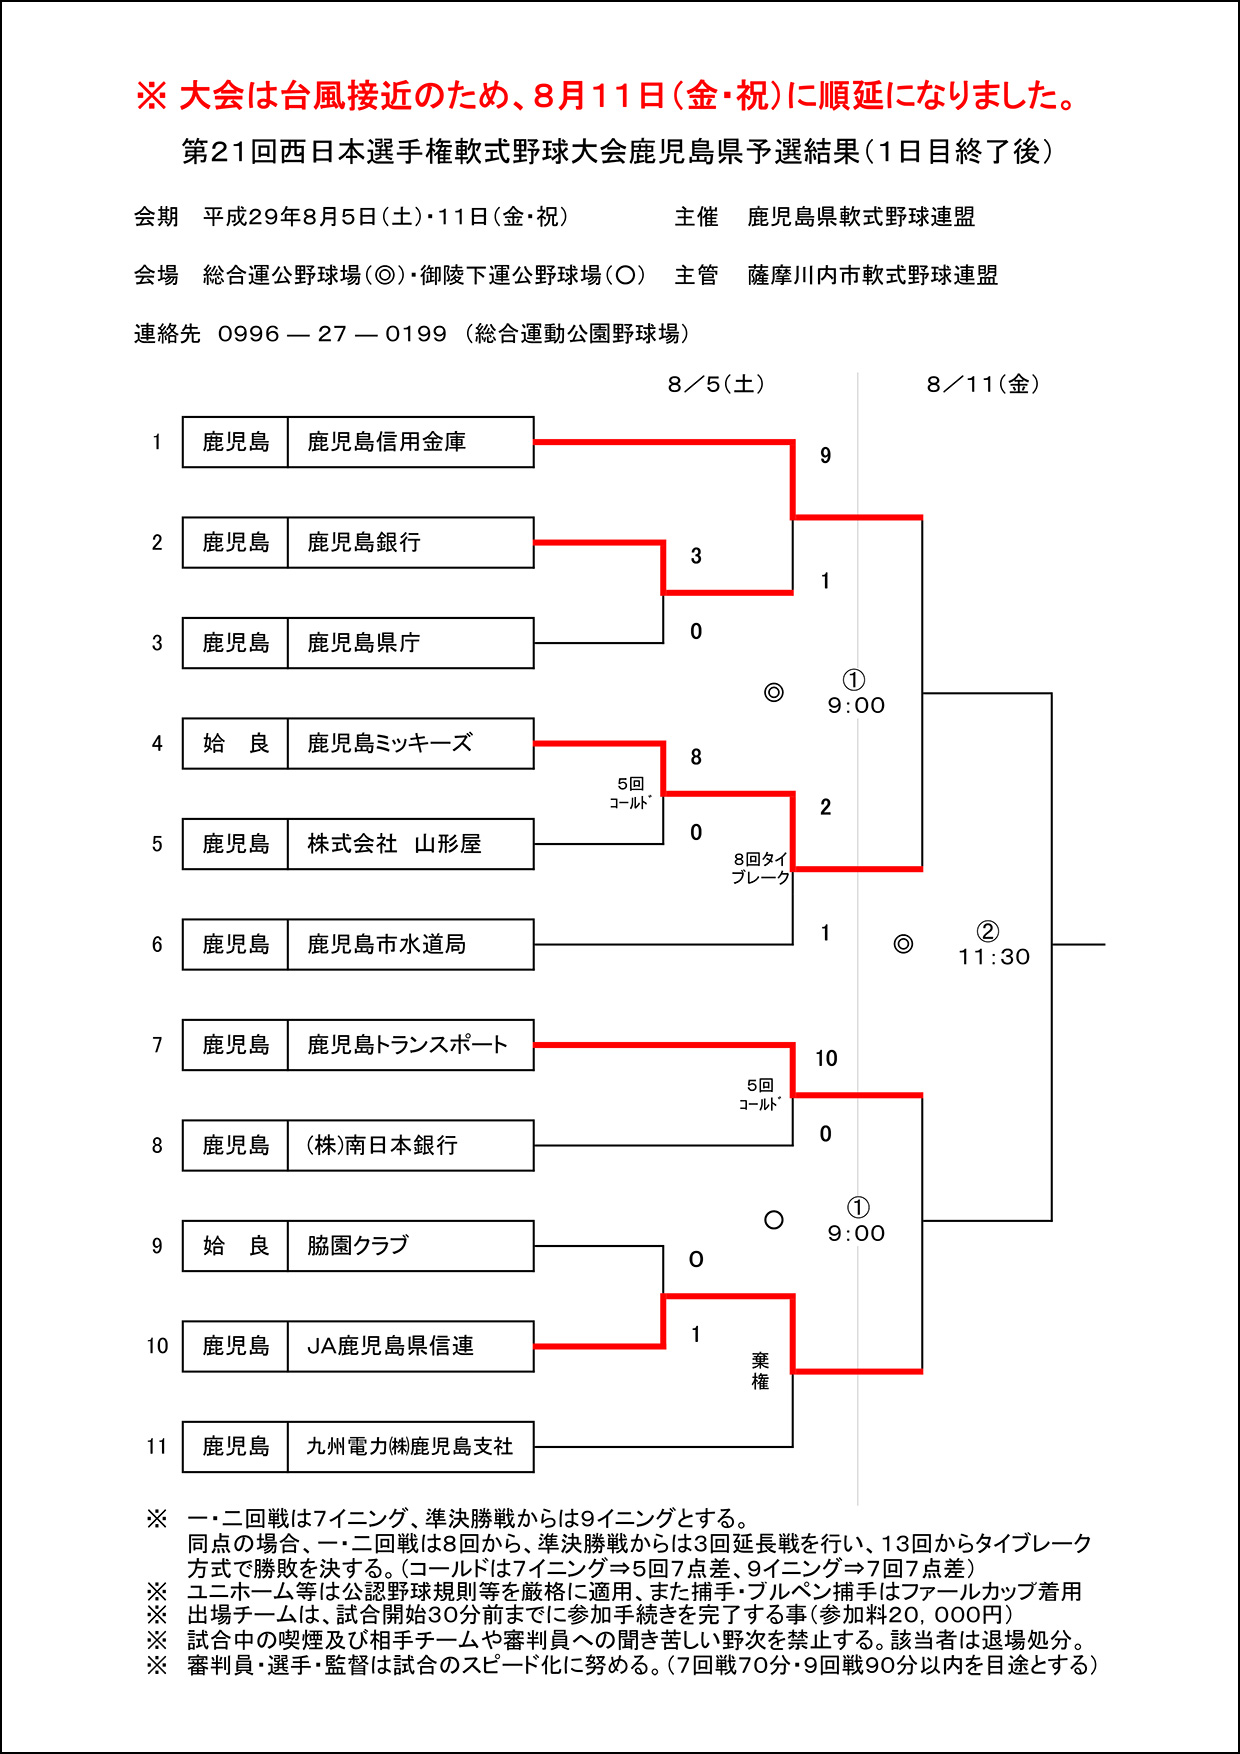 【1日目終了】第21回西日本選手権軟式野球大会鹿児島県予選結果